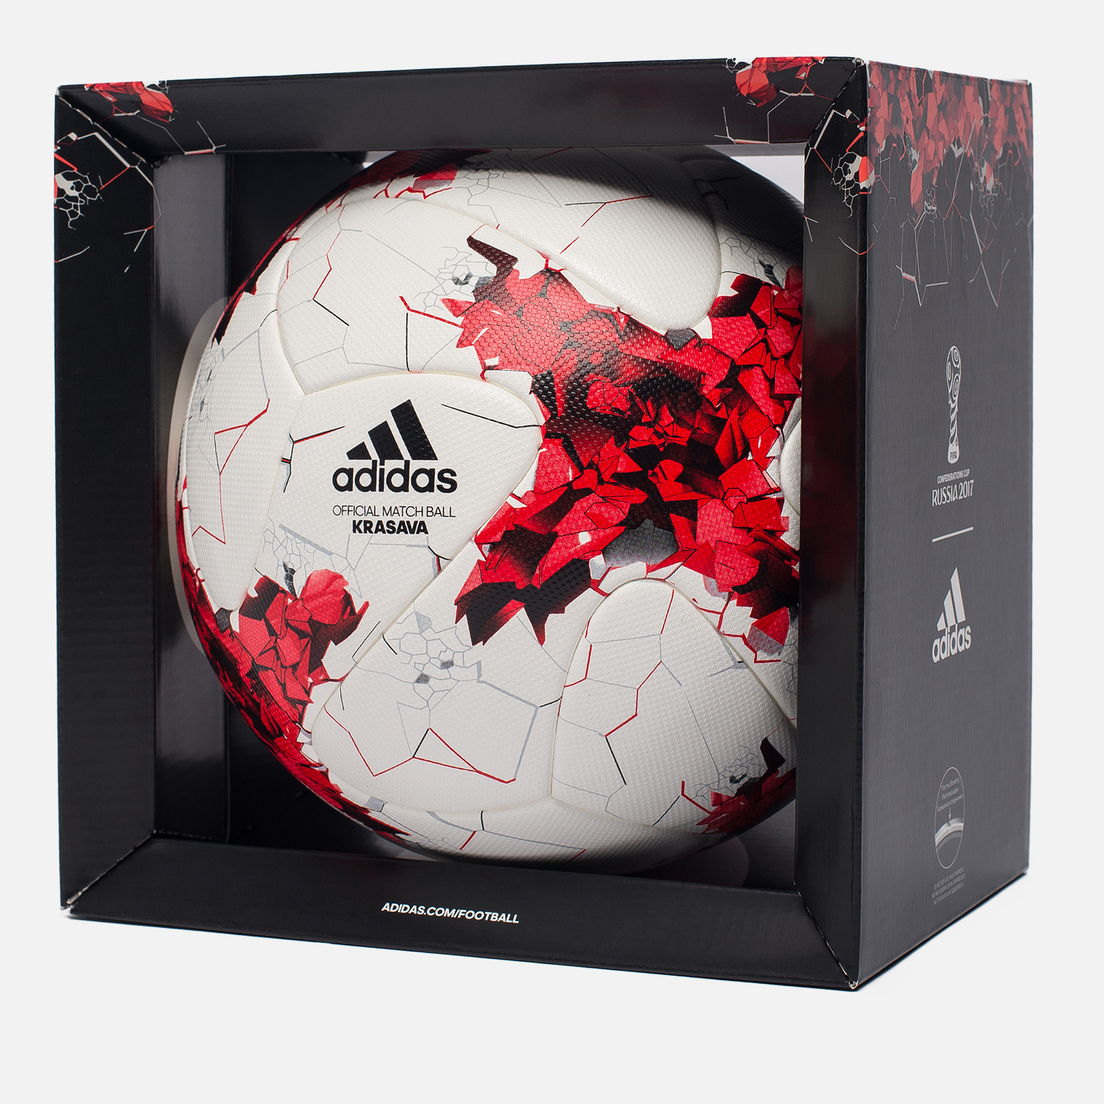 adidas Футбольный мяч Krasava FIFA Confederations Cup 2017